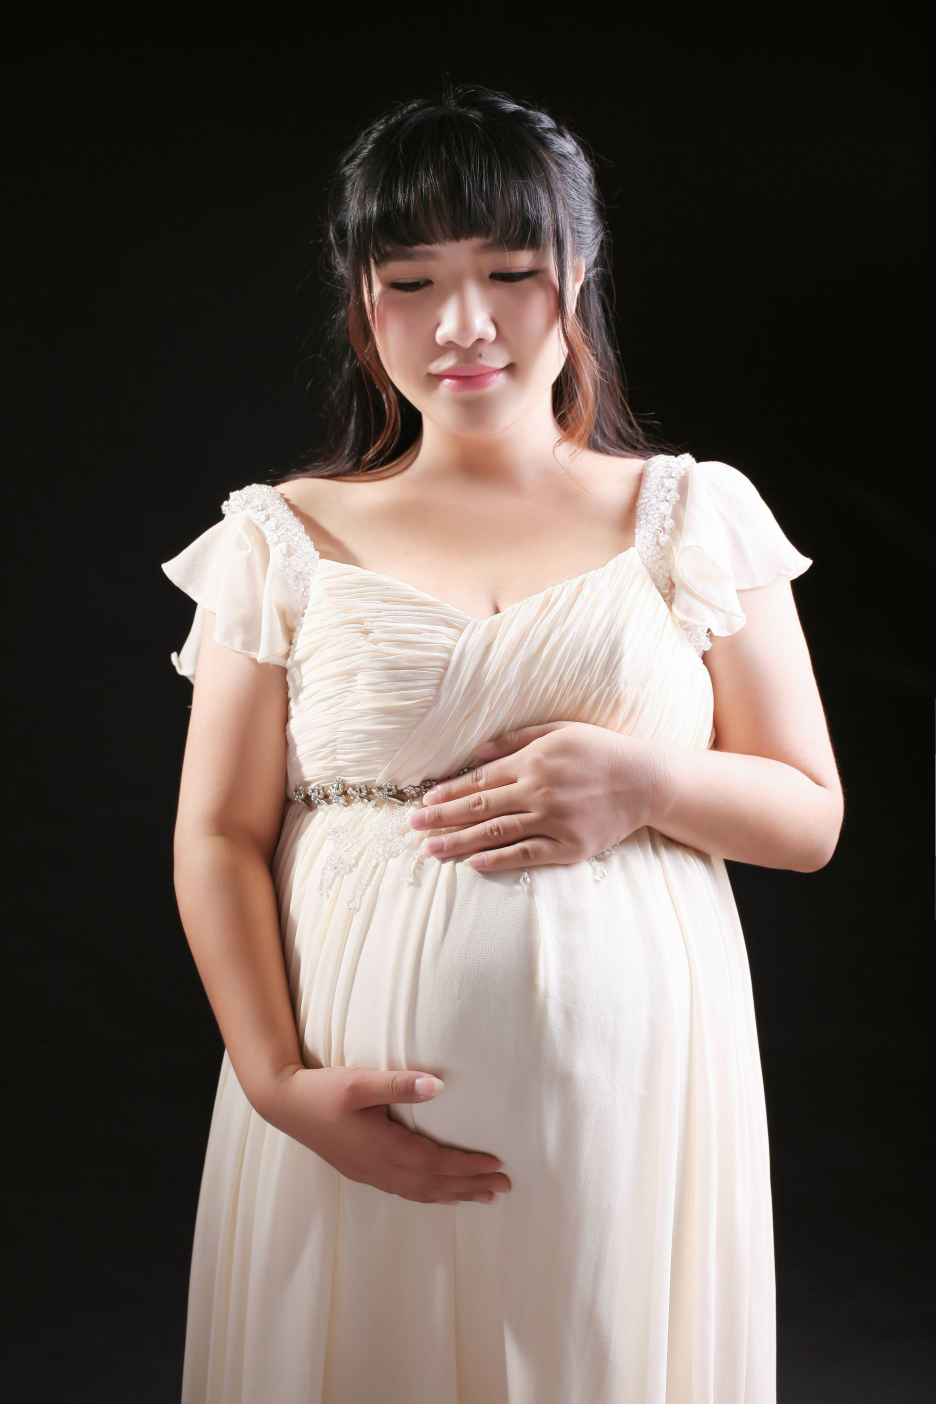 33周拍的孕妇照现在只是初修片还没拿到手